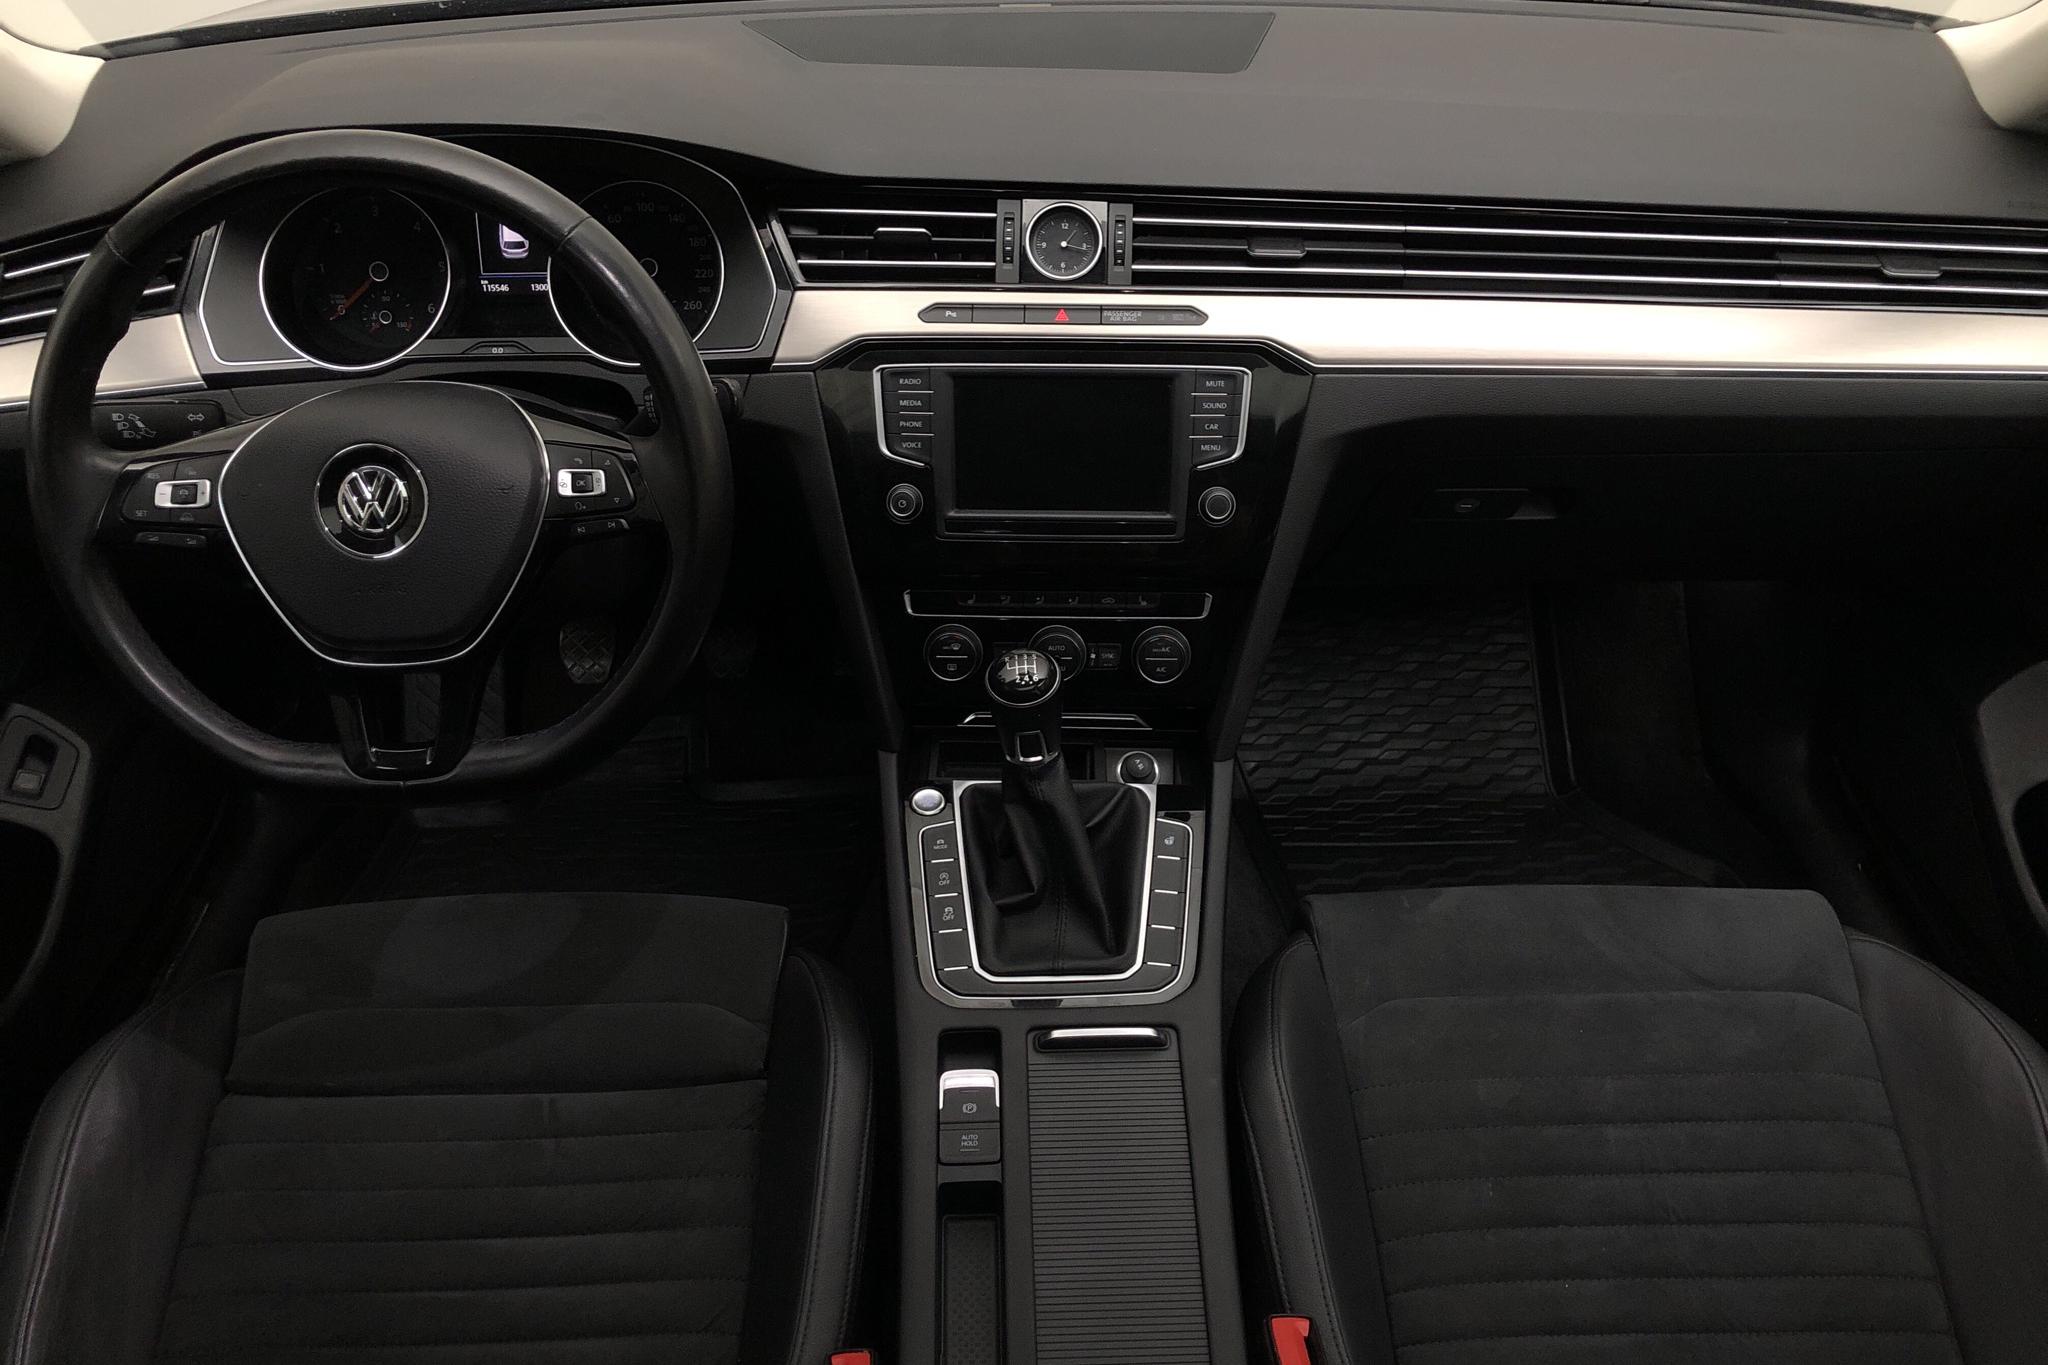 VW Passat 2.0 TDI Sportscombi (190hk) - 11 556 mil - Manuell - svart - 2017